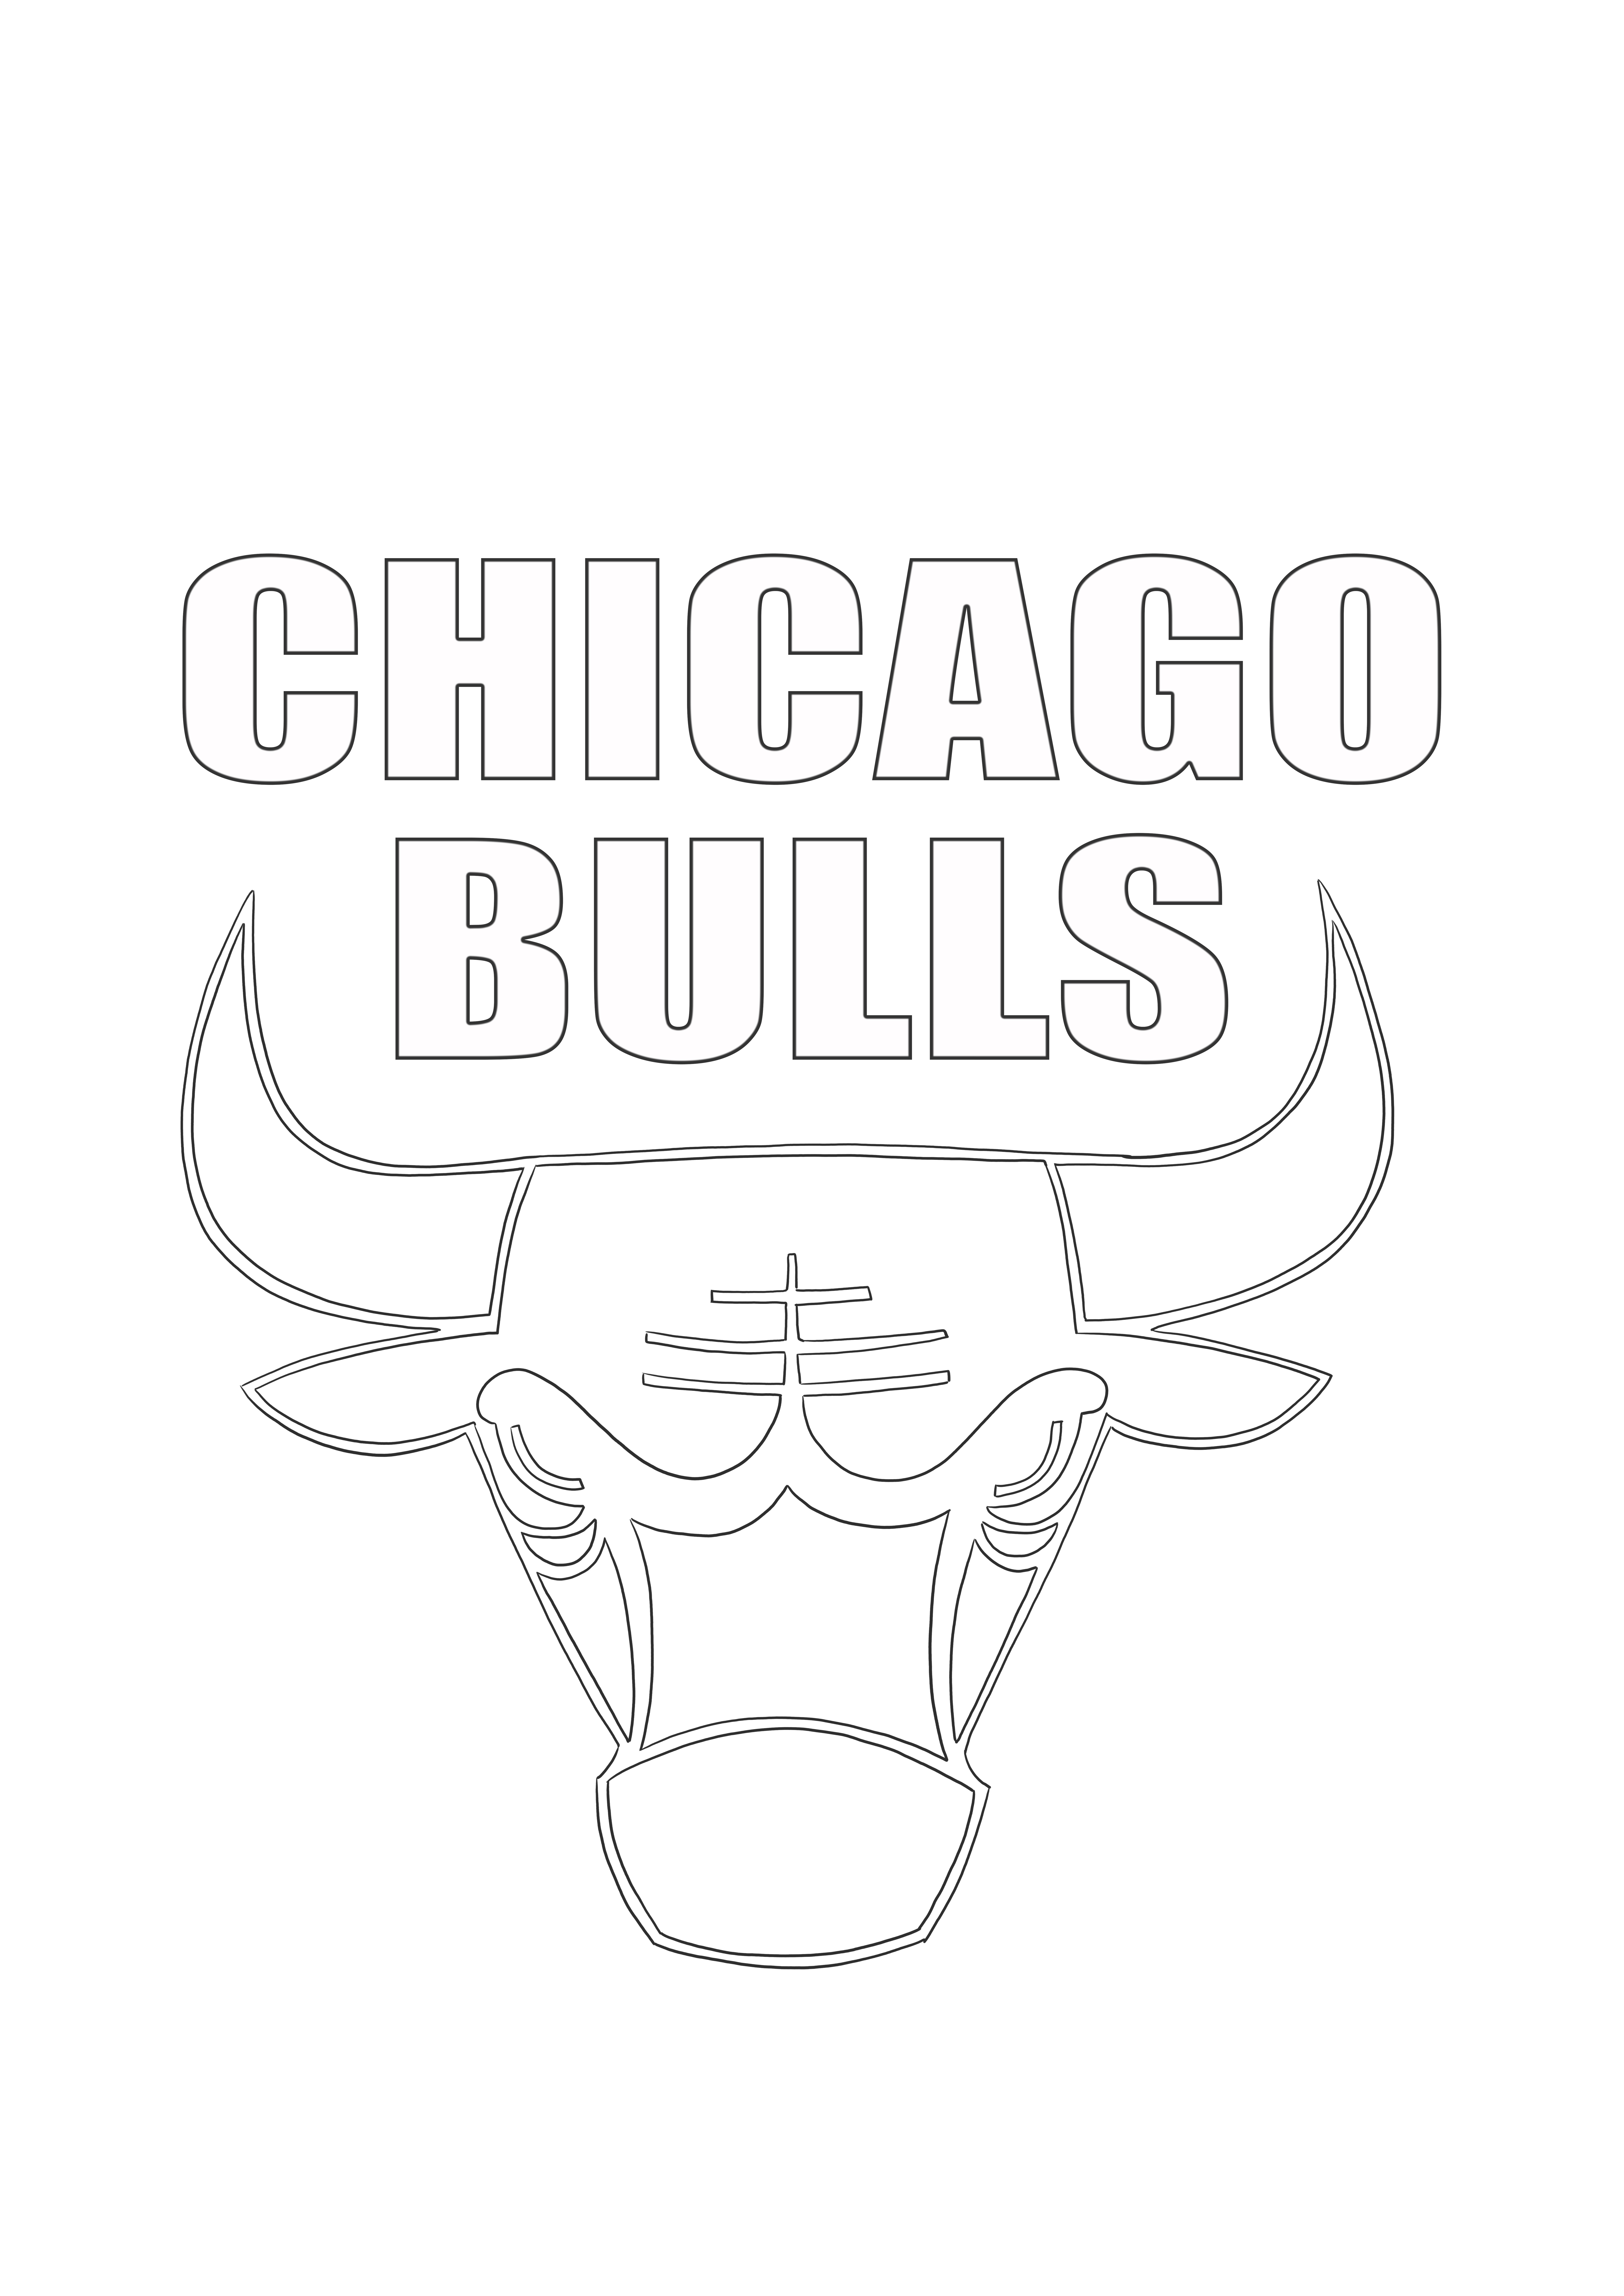 Gambar mewarnai logo banteng Chicago gratis untuk dicetak dan diwarnai